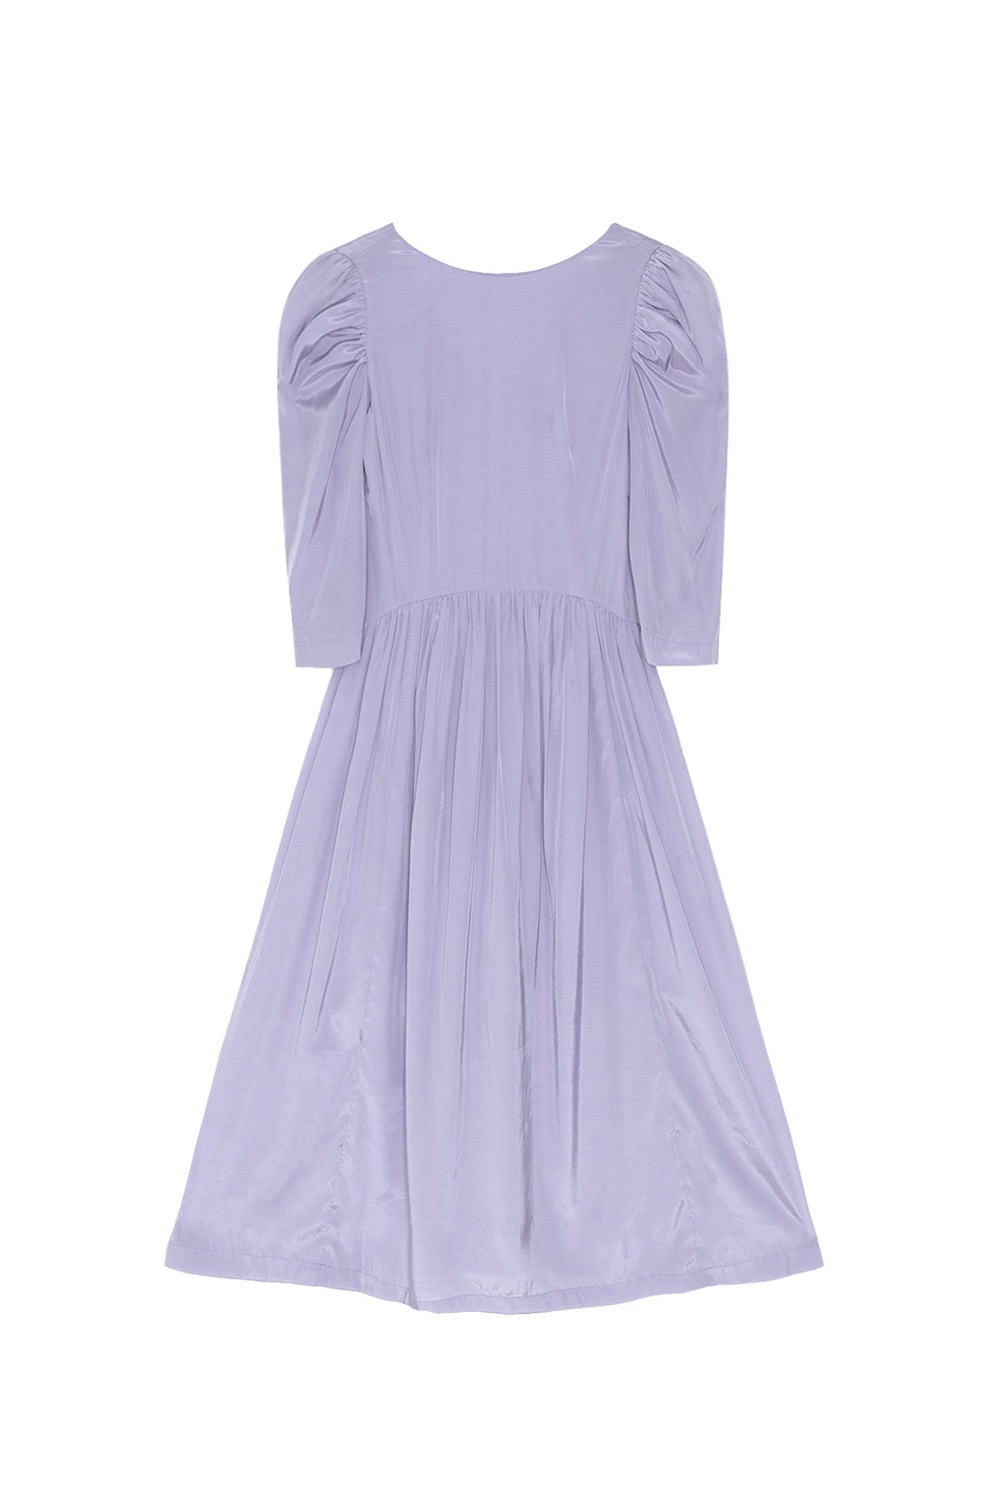 Diana satin dress(lilac)